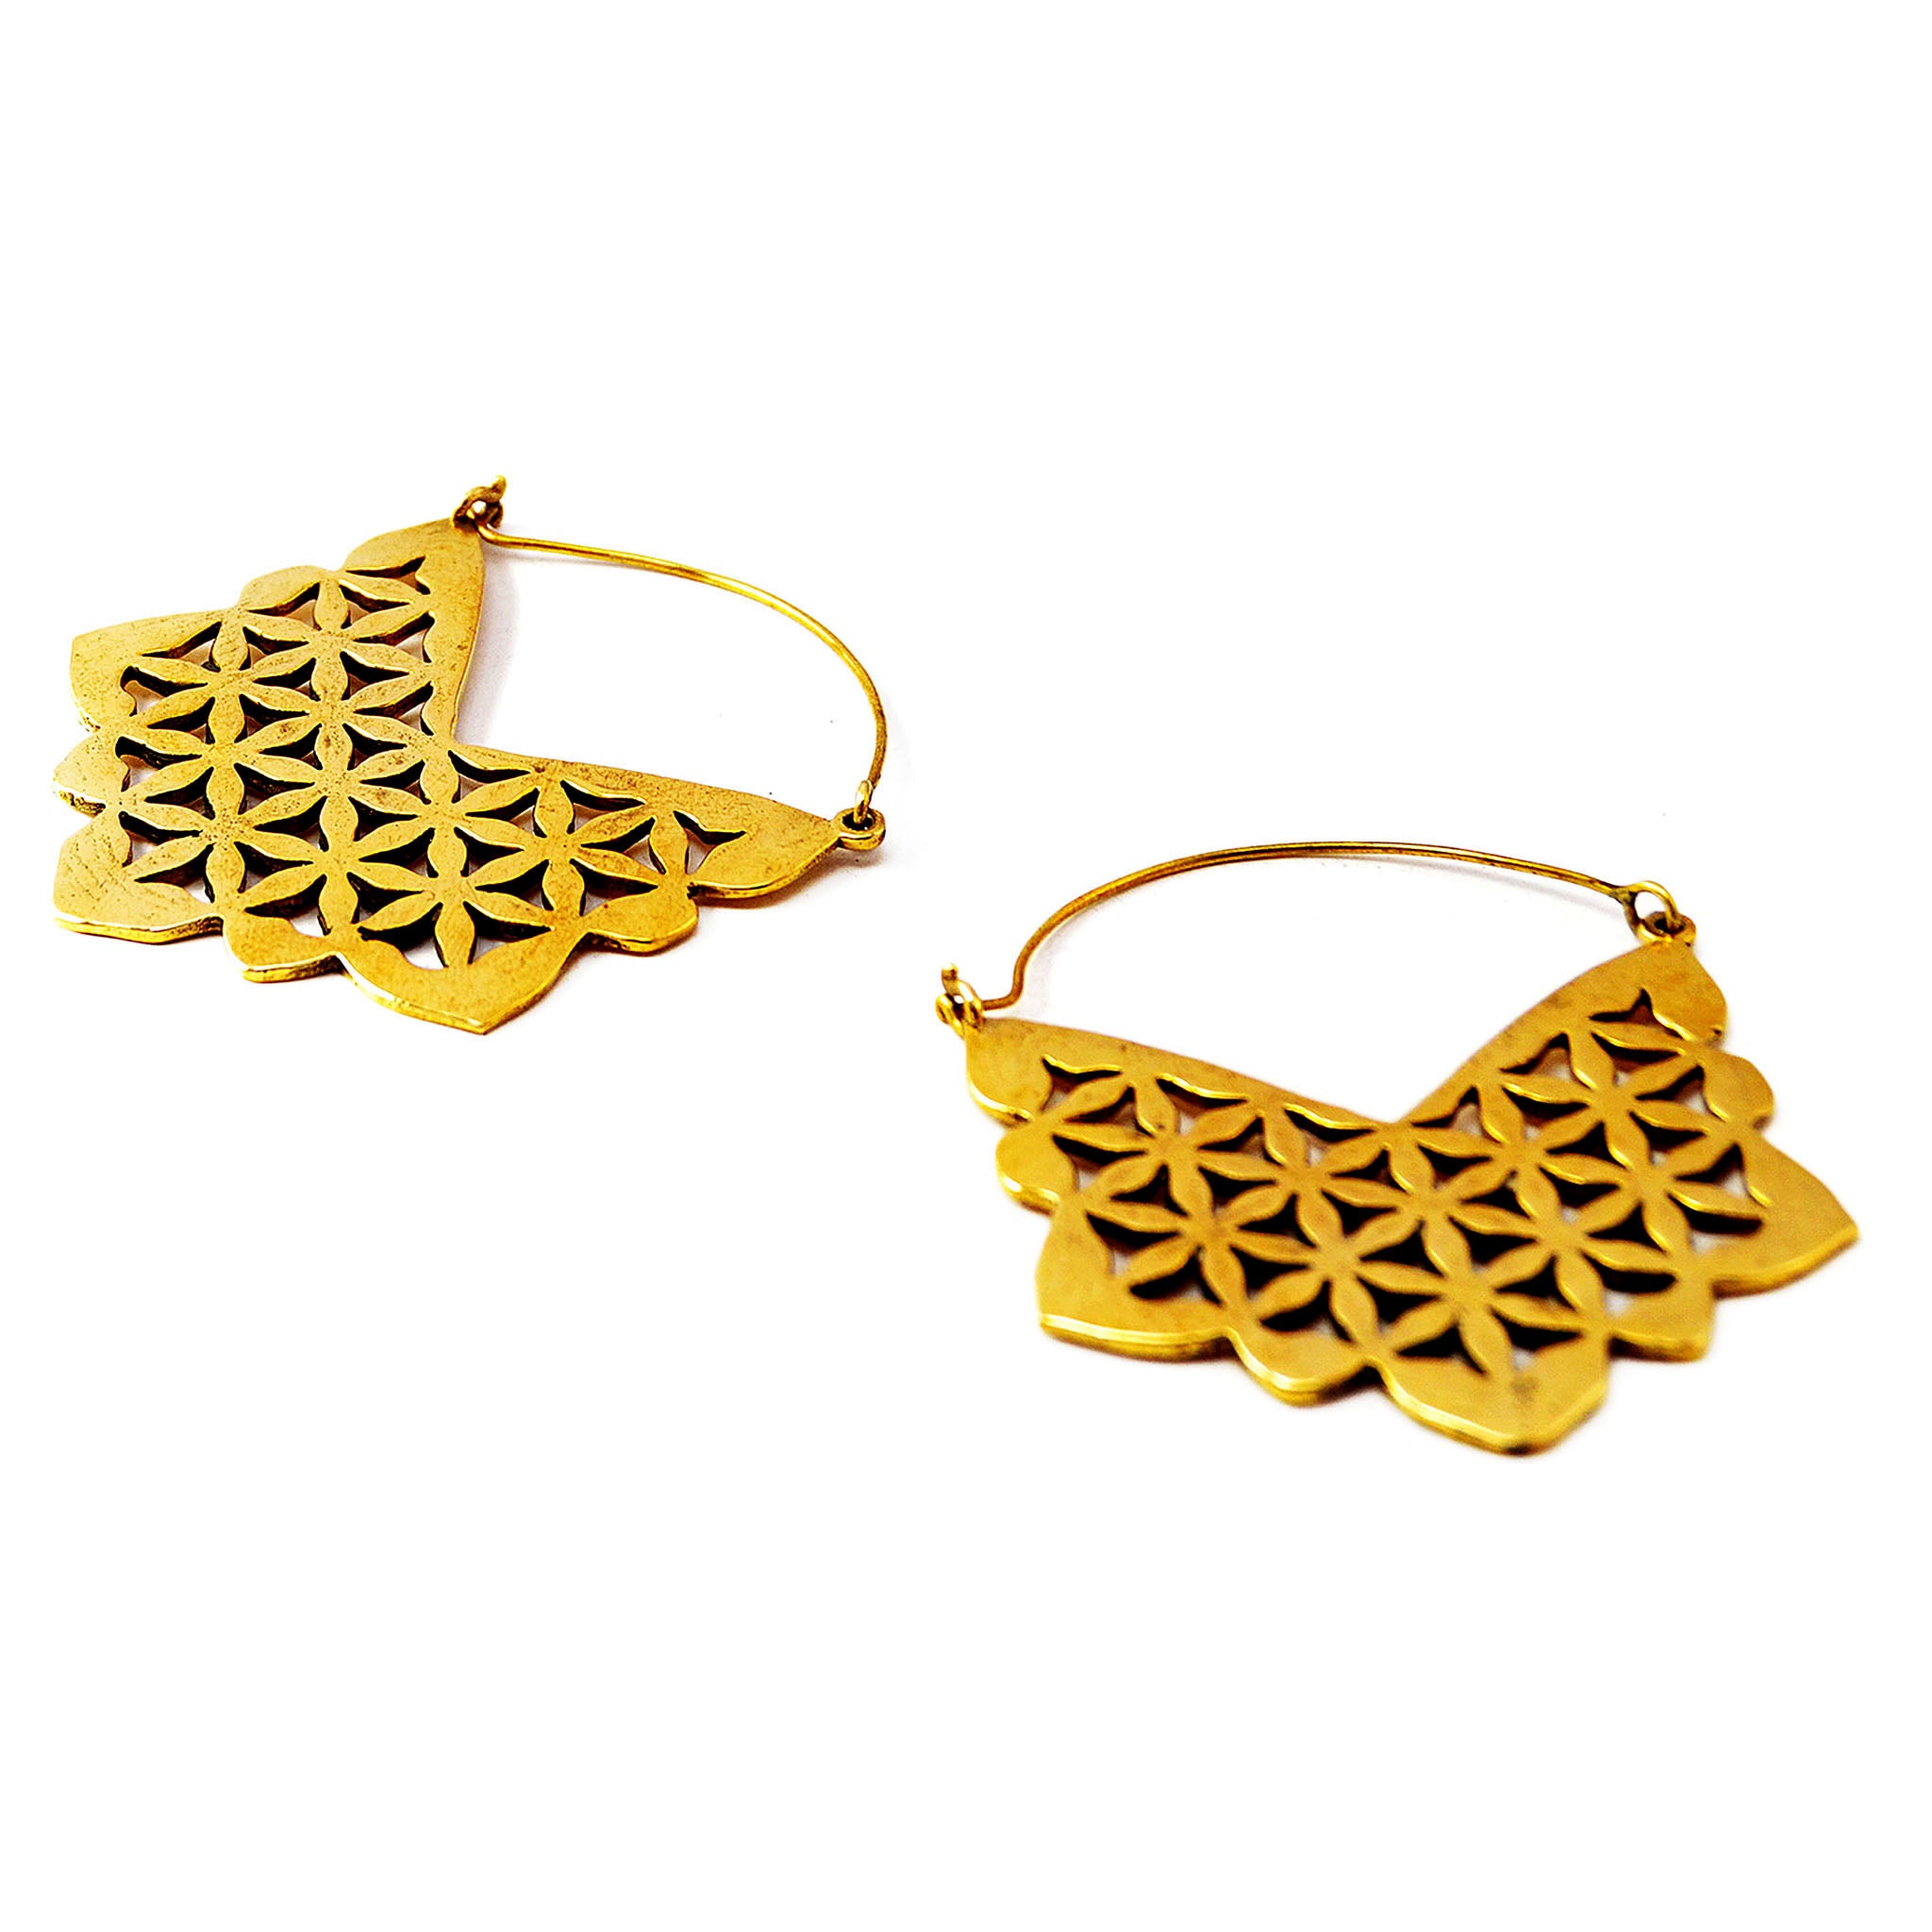 Gypsy geometric earrings